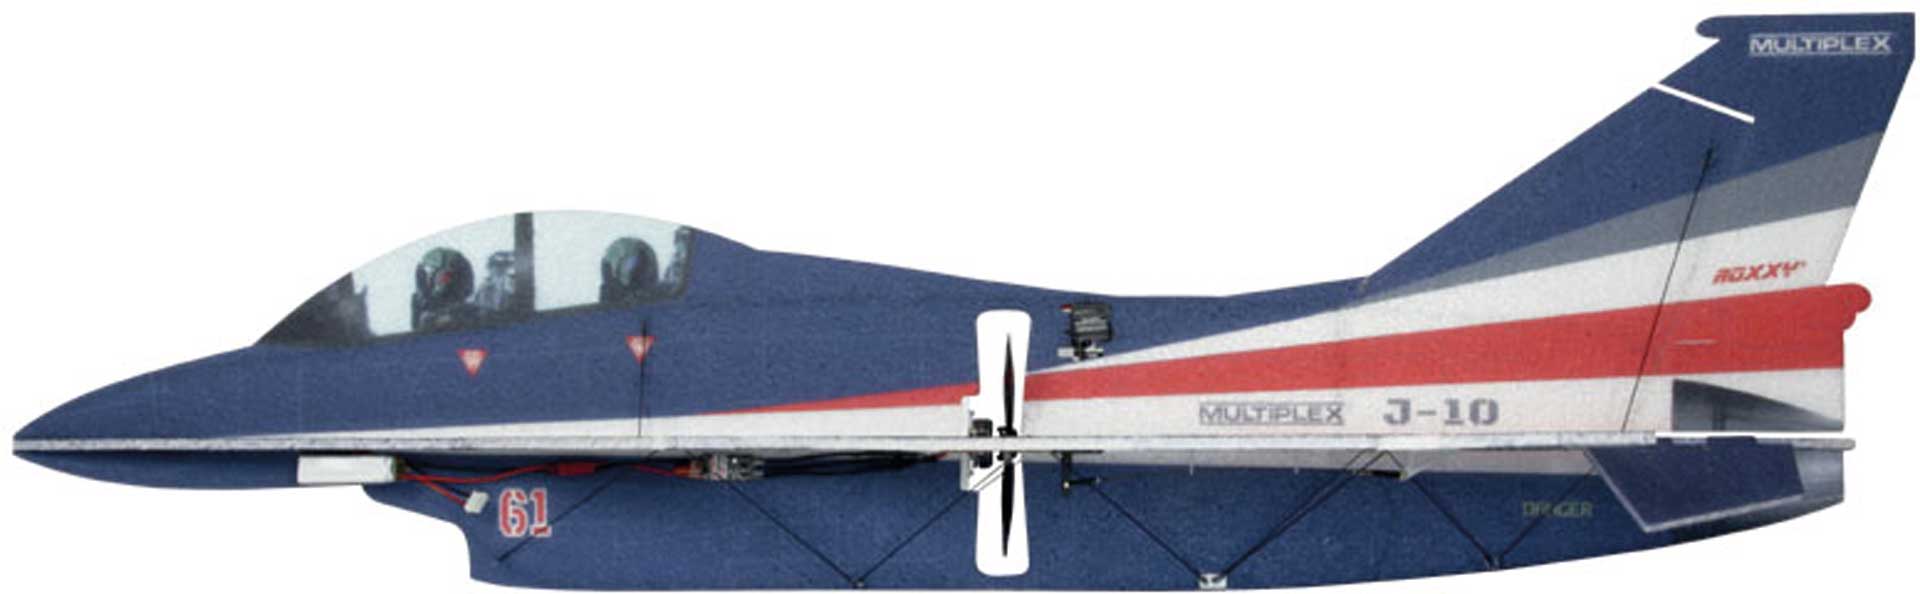 MULTIPLEX J-10 Indoor 3D Jet